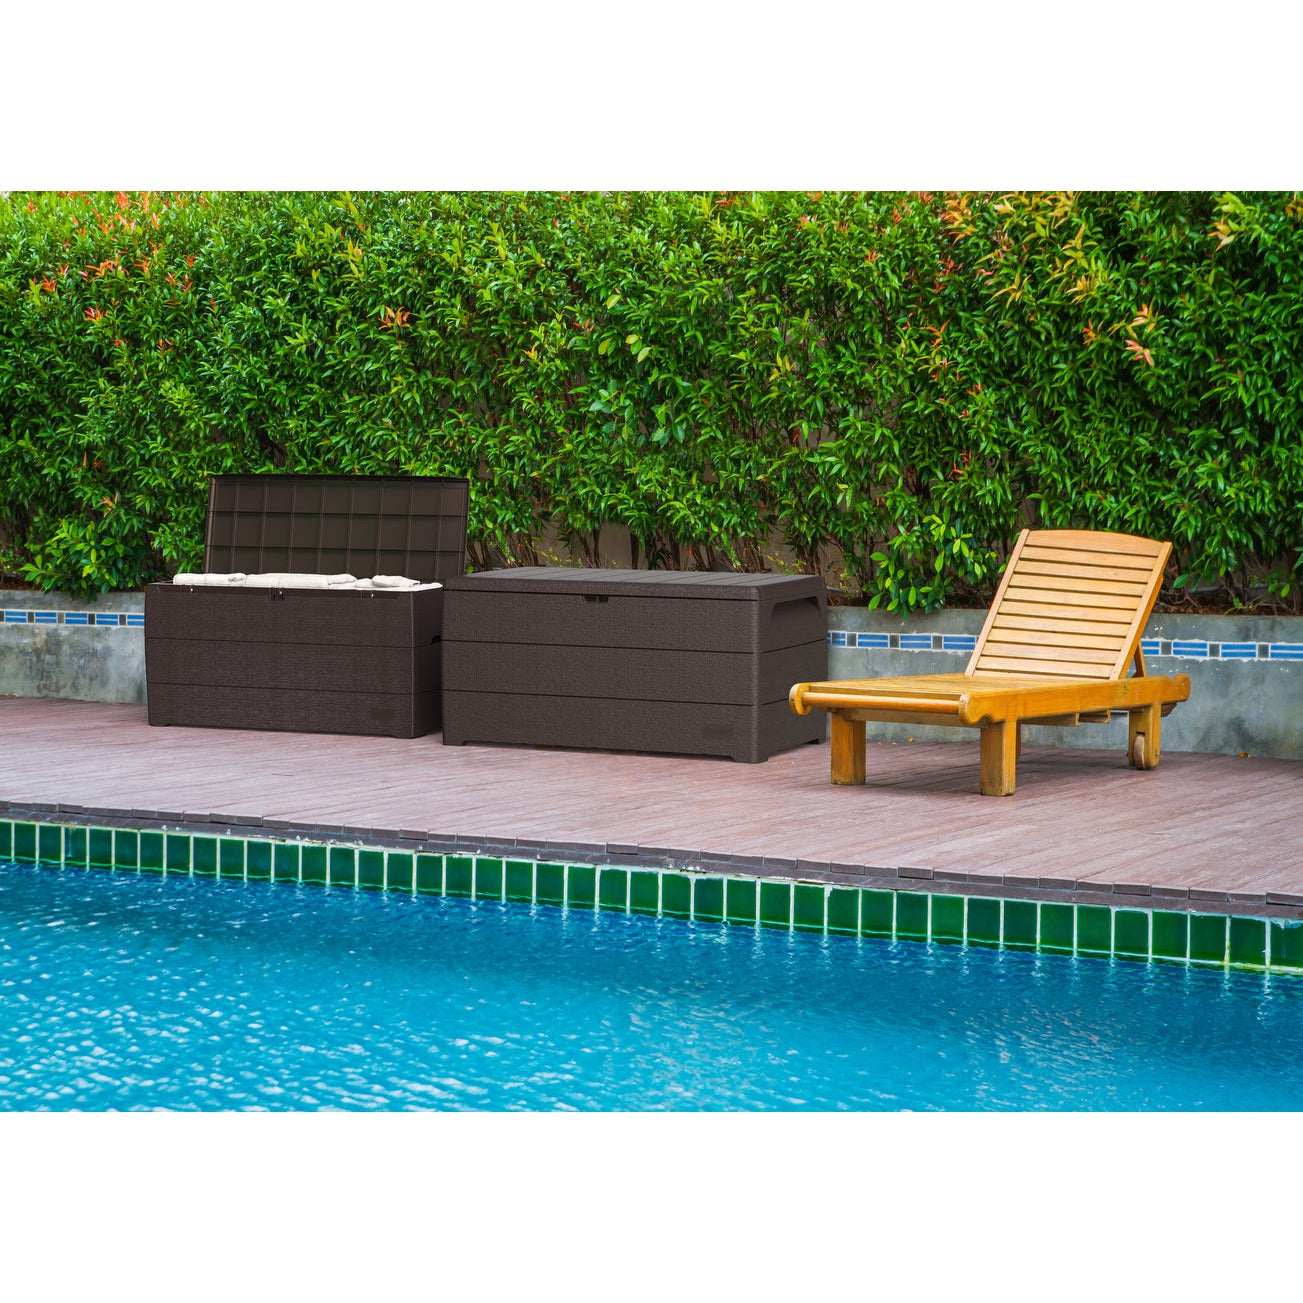 Duramax Deck Box Duramax 71 Gallon Outdoor Resin Deck Box, Garden Furniture Organizer (2 Colors)